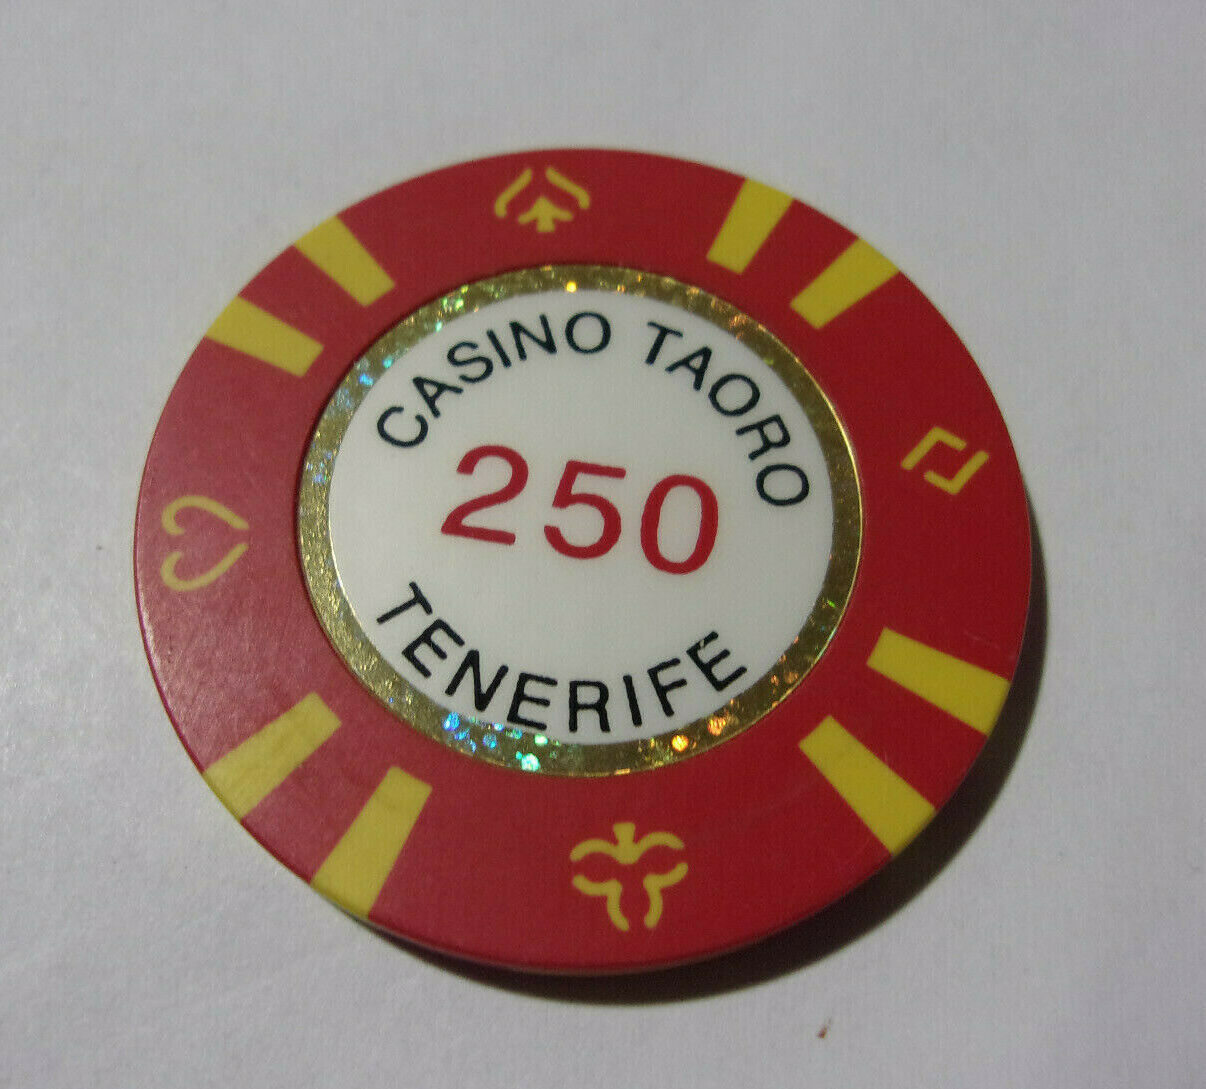 Casino Taoro Tenerife 250 Hotel Casino Gaming Poker Chip - Canary Islands, Spain